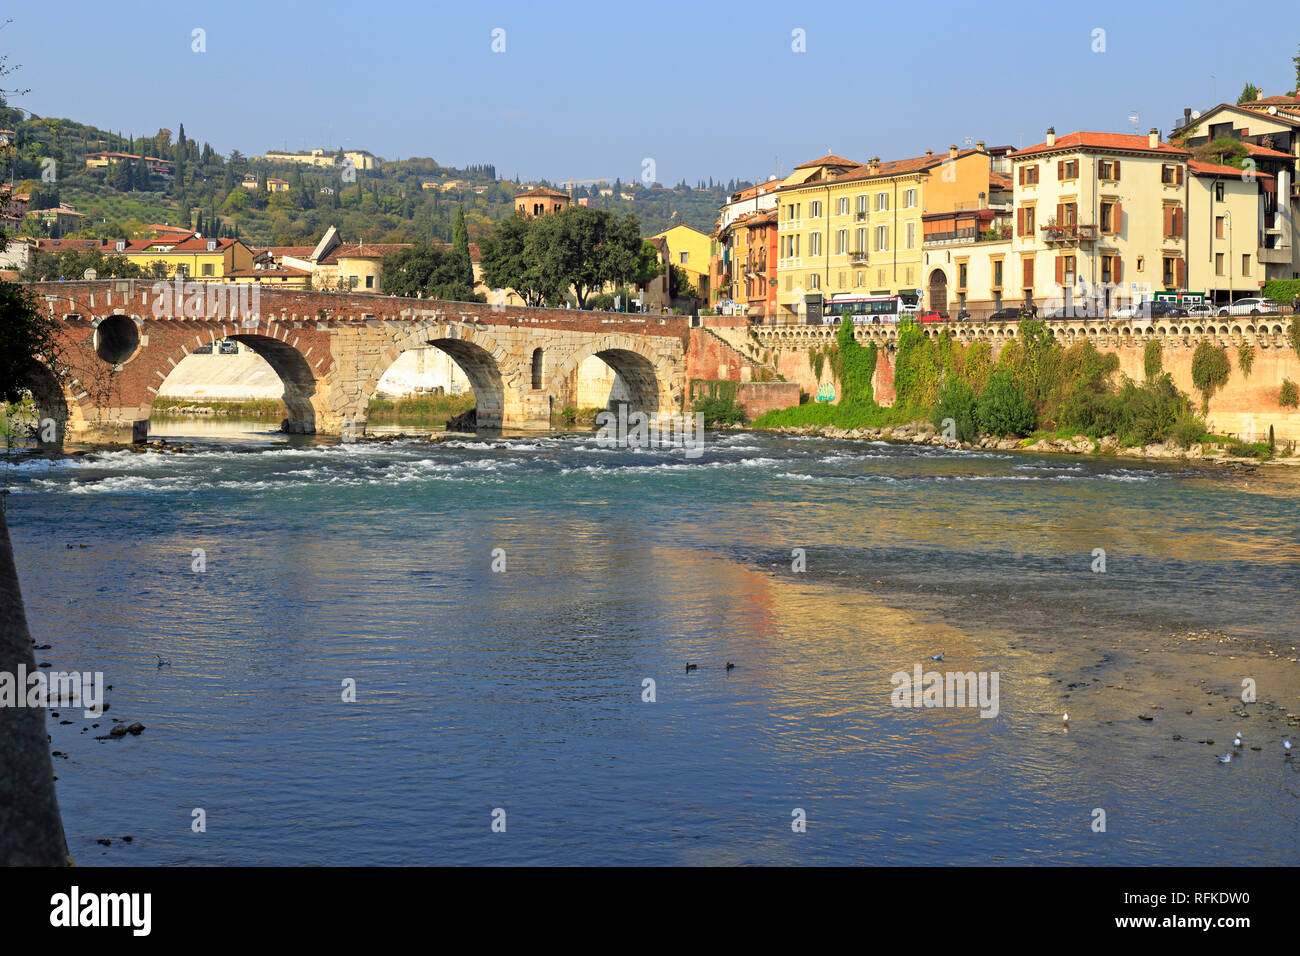 Ponte Pietra, arco romano ponte che attraversa il fiume Adige, Verona, Veneto, Italia. Foto Stock